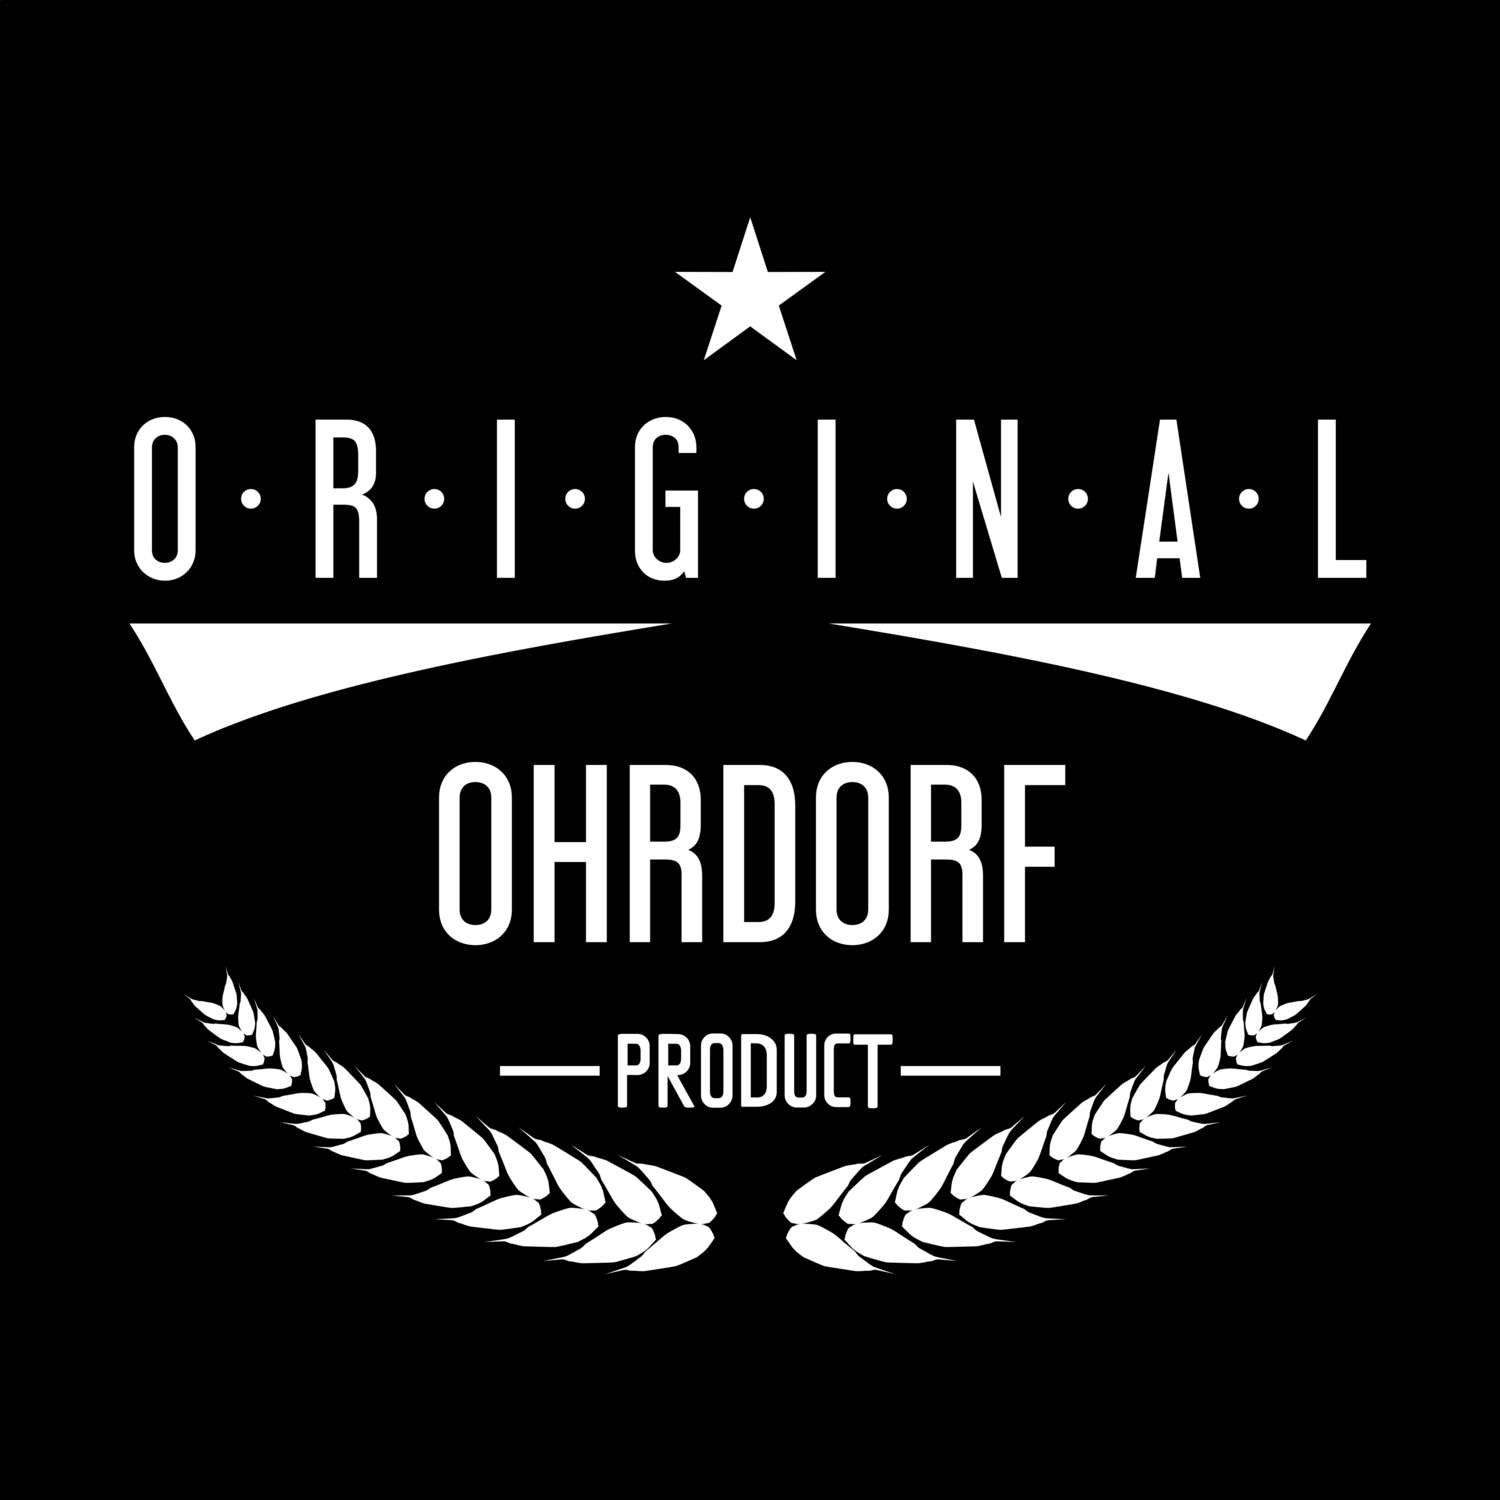 Ohrdorf T-Shirt »Original Product«